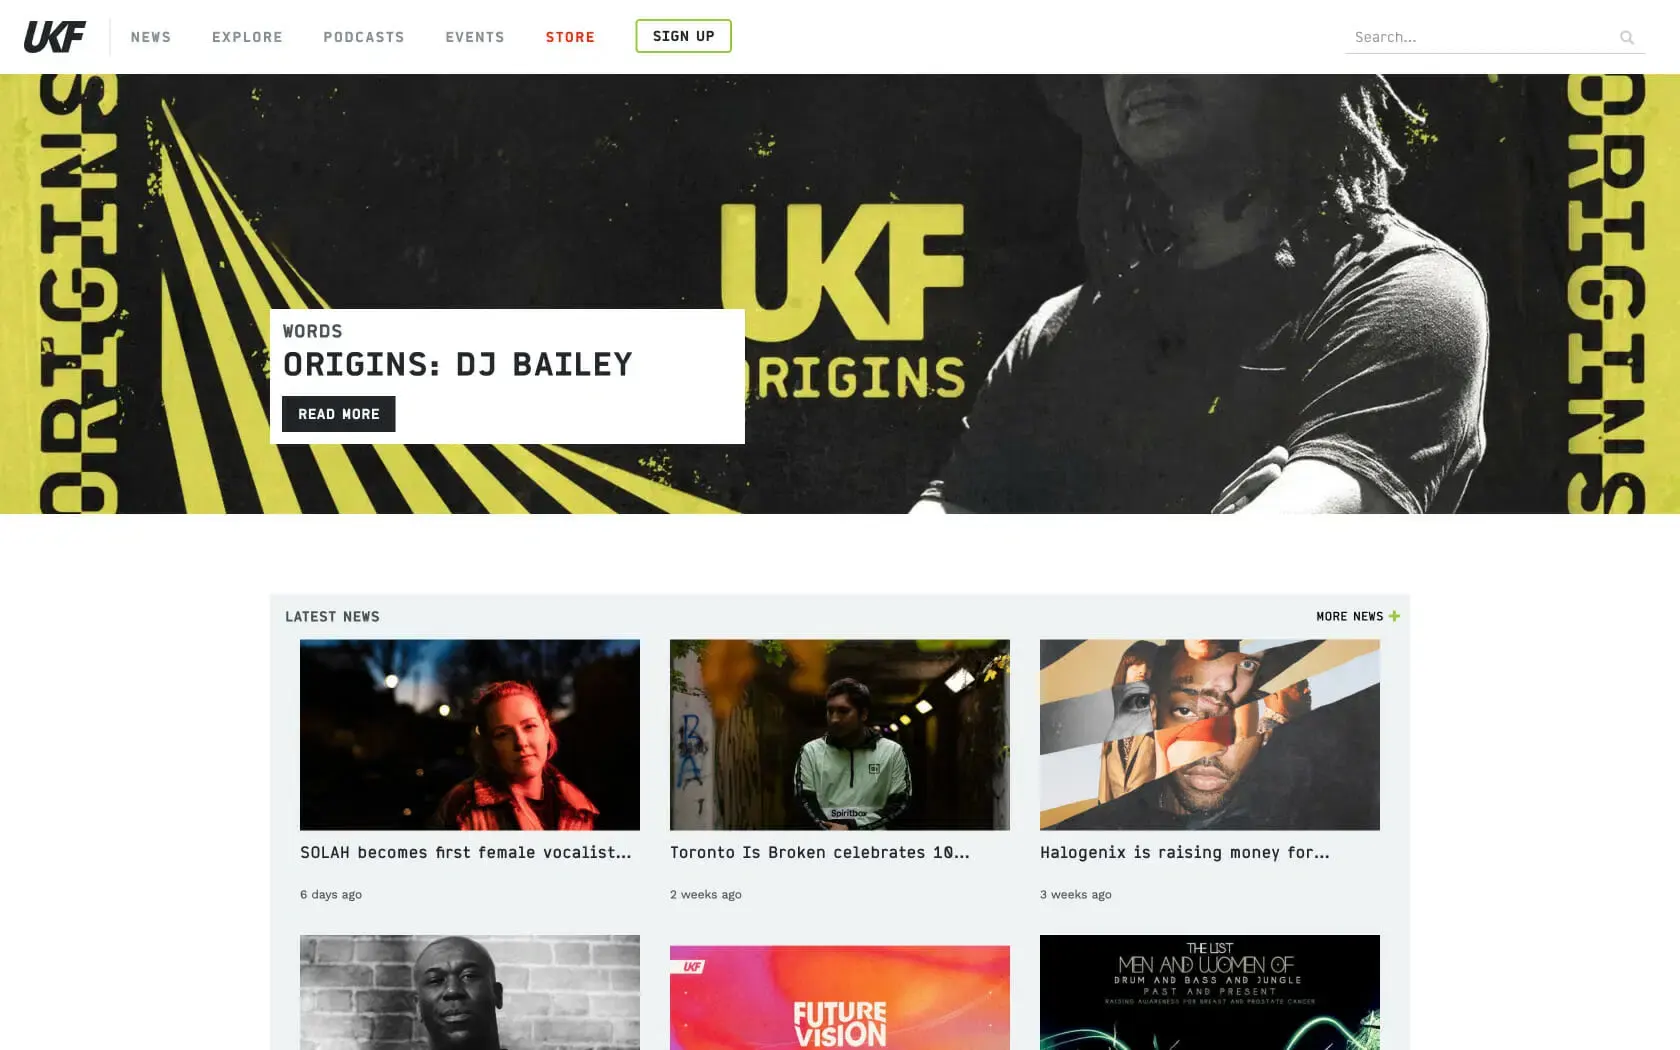 Screenshot of The UKF website.